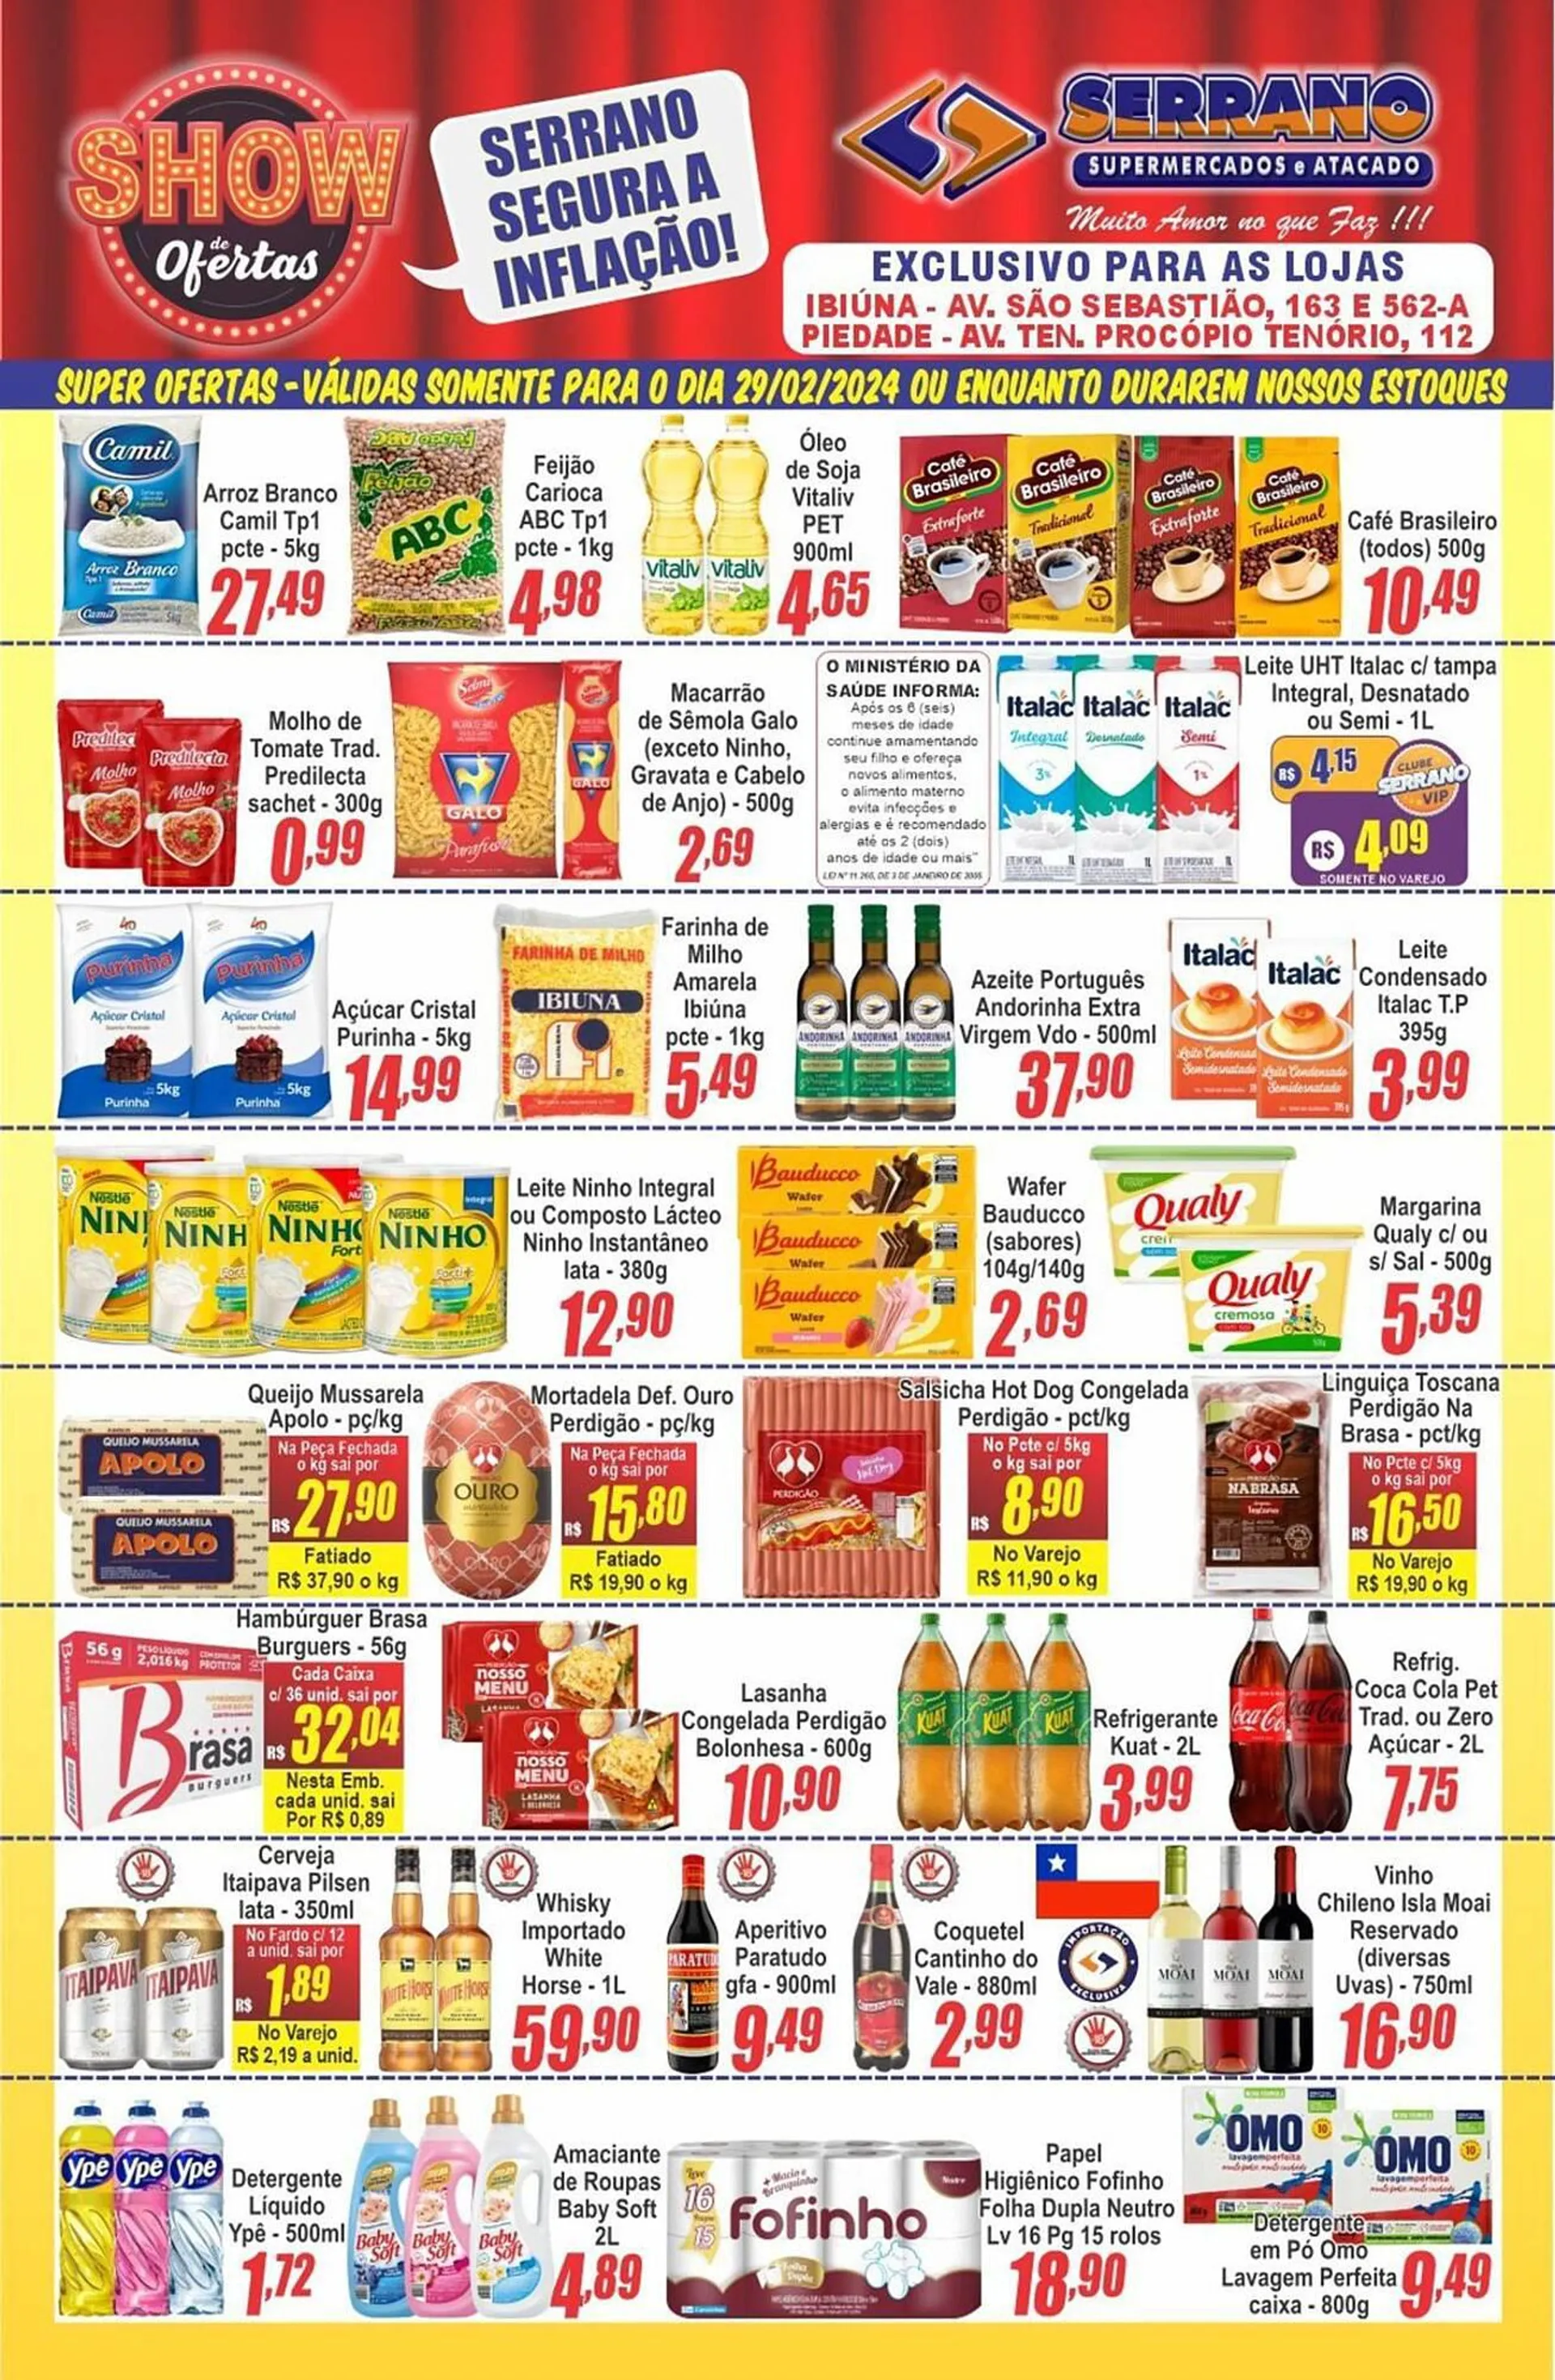 Encarte de Catálogo Serrano Supermercado 29 de fevereiro até 6 de março 2024 - Pagina 